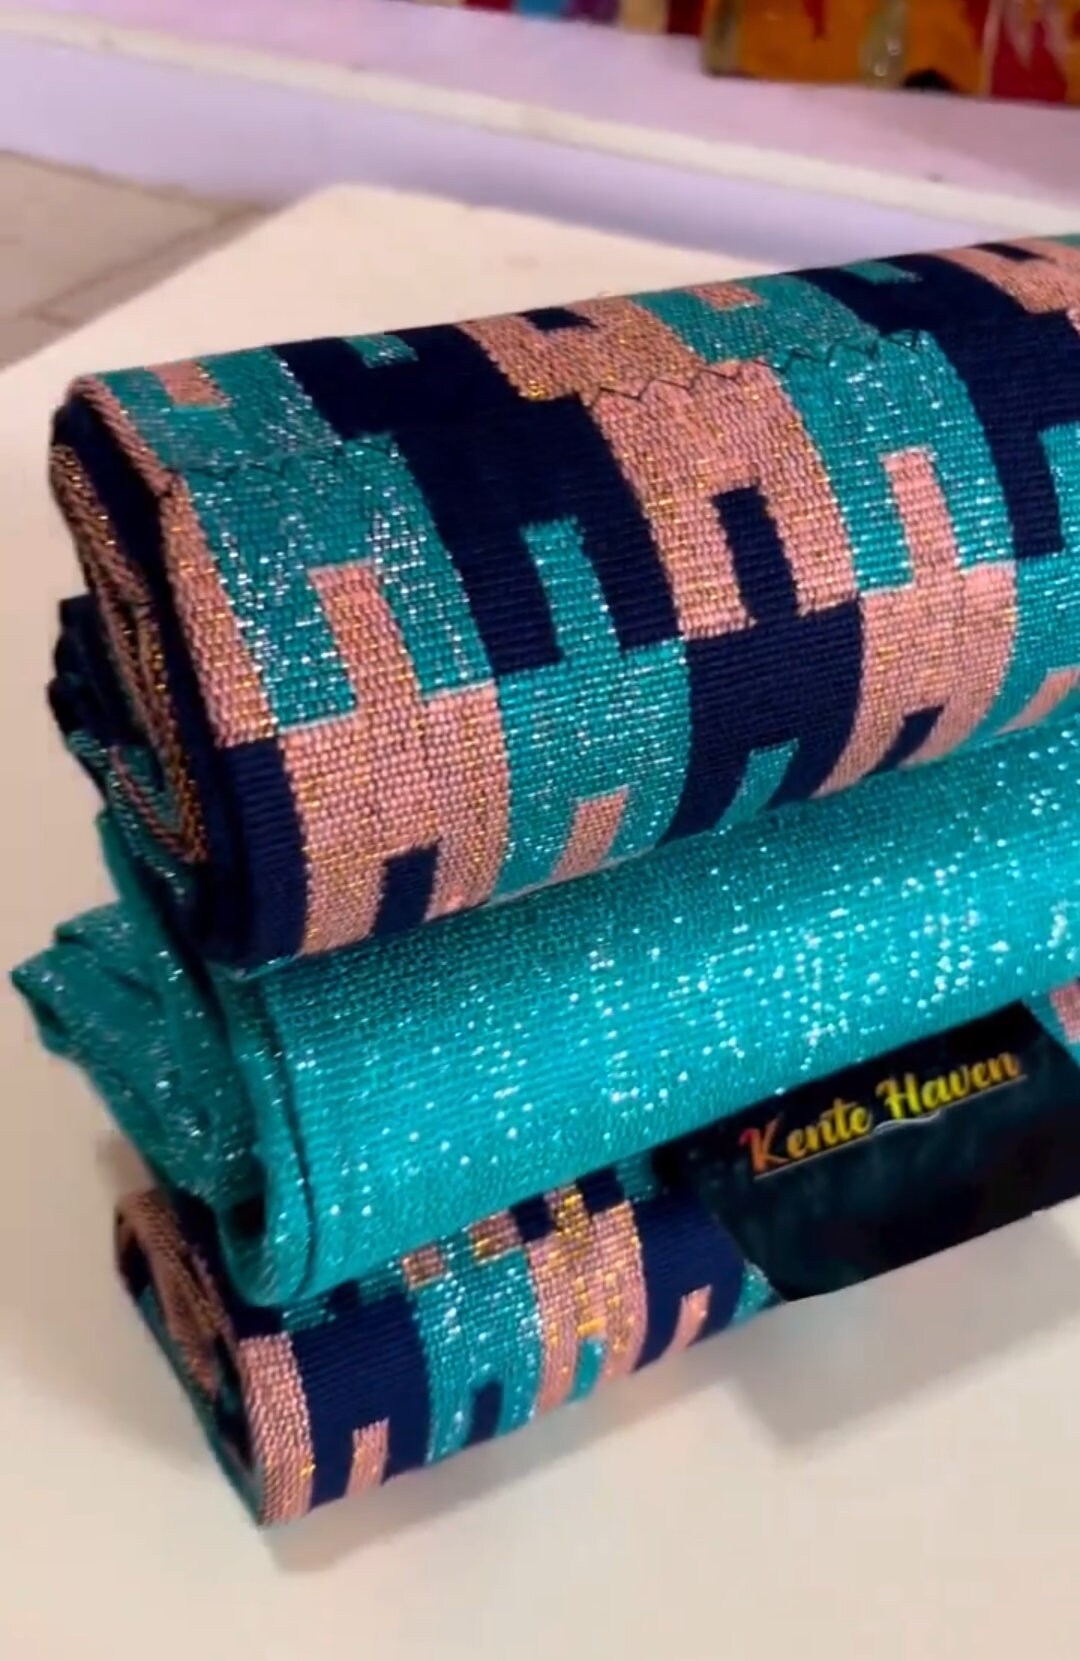 Kente Heaven Hand Weaved Kente Cloth KH 60